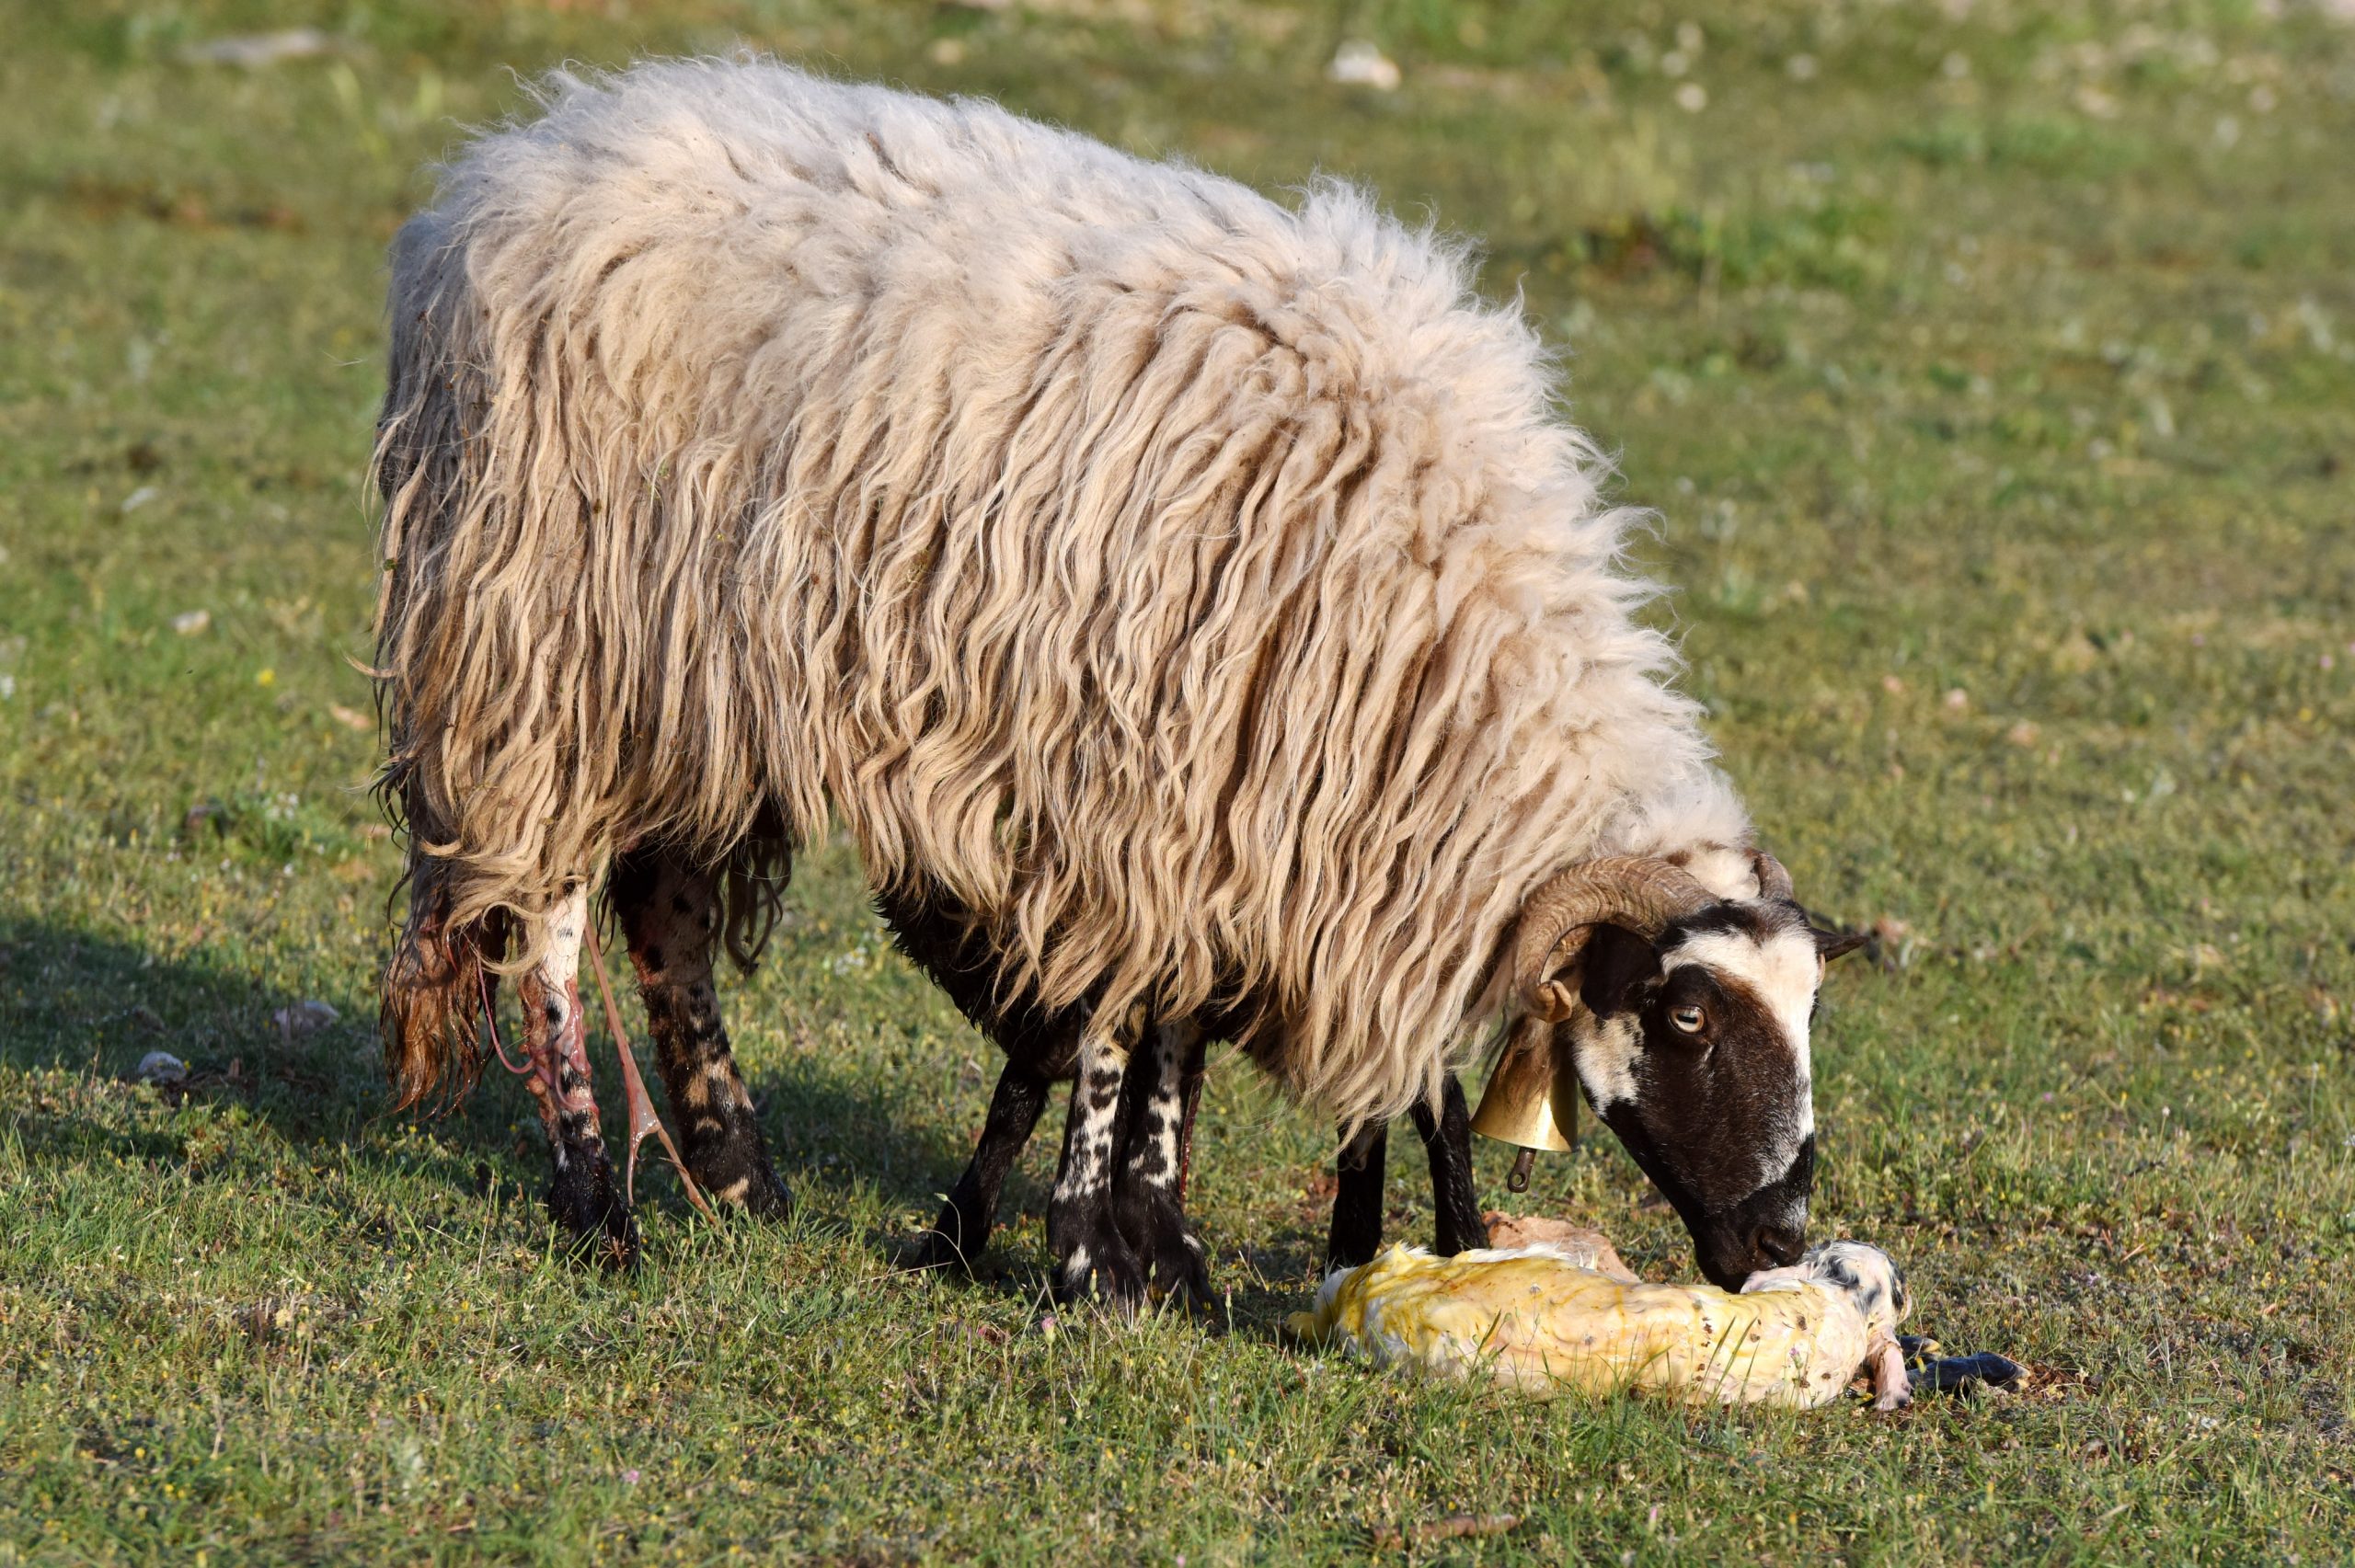 01.05.2020., Sibenik - Na pasnjaku u Dubravi kod Sibenika ovca ojanjila dva janjeta koji su odmah napravili prve korake.
Photo: Hrvoje Jelavic/PIXSELL